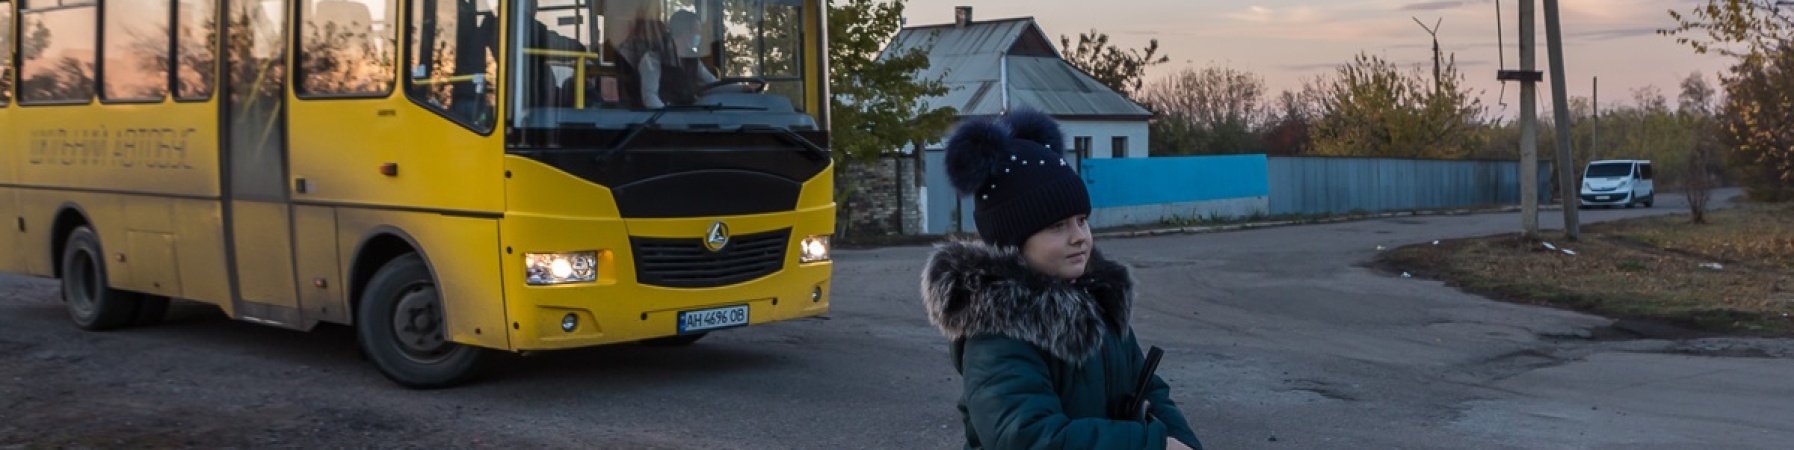 bambina cammina di fronte ad uno scuola bus giallo in Ucraina